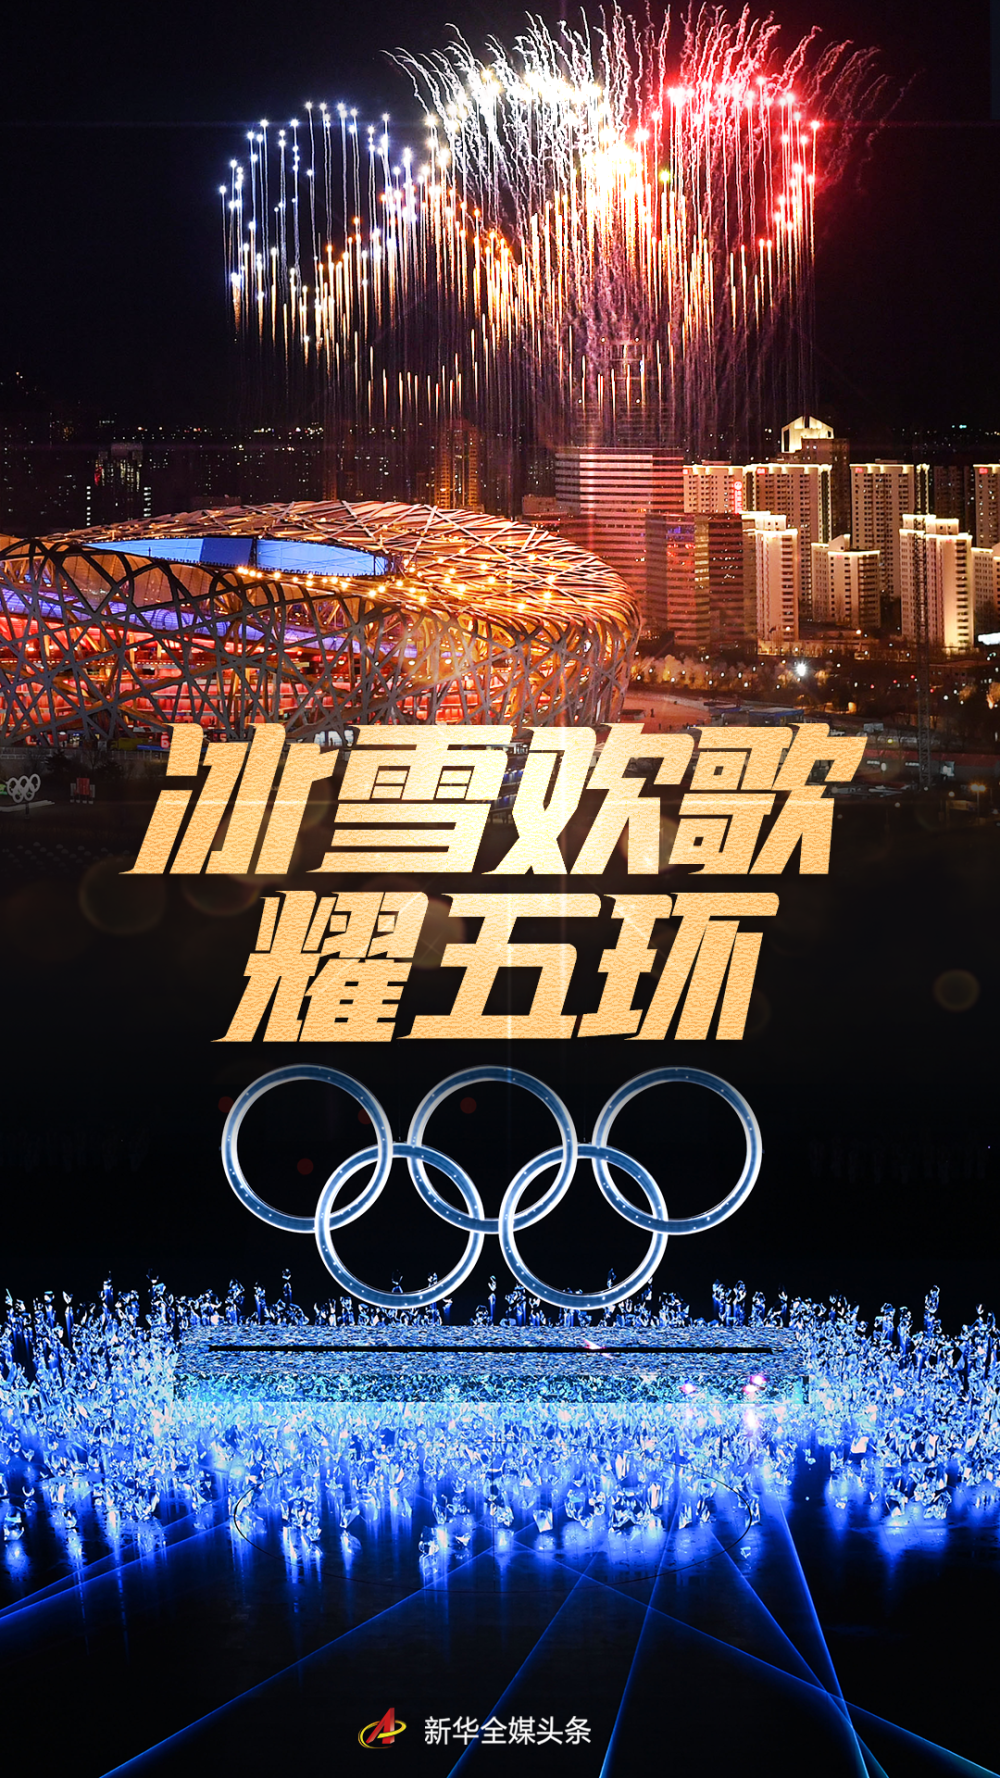 2022年北京冬奥会背景图片